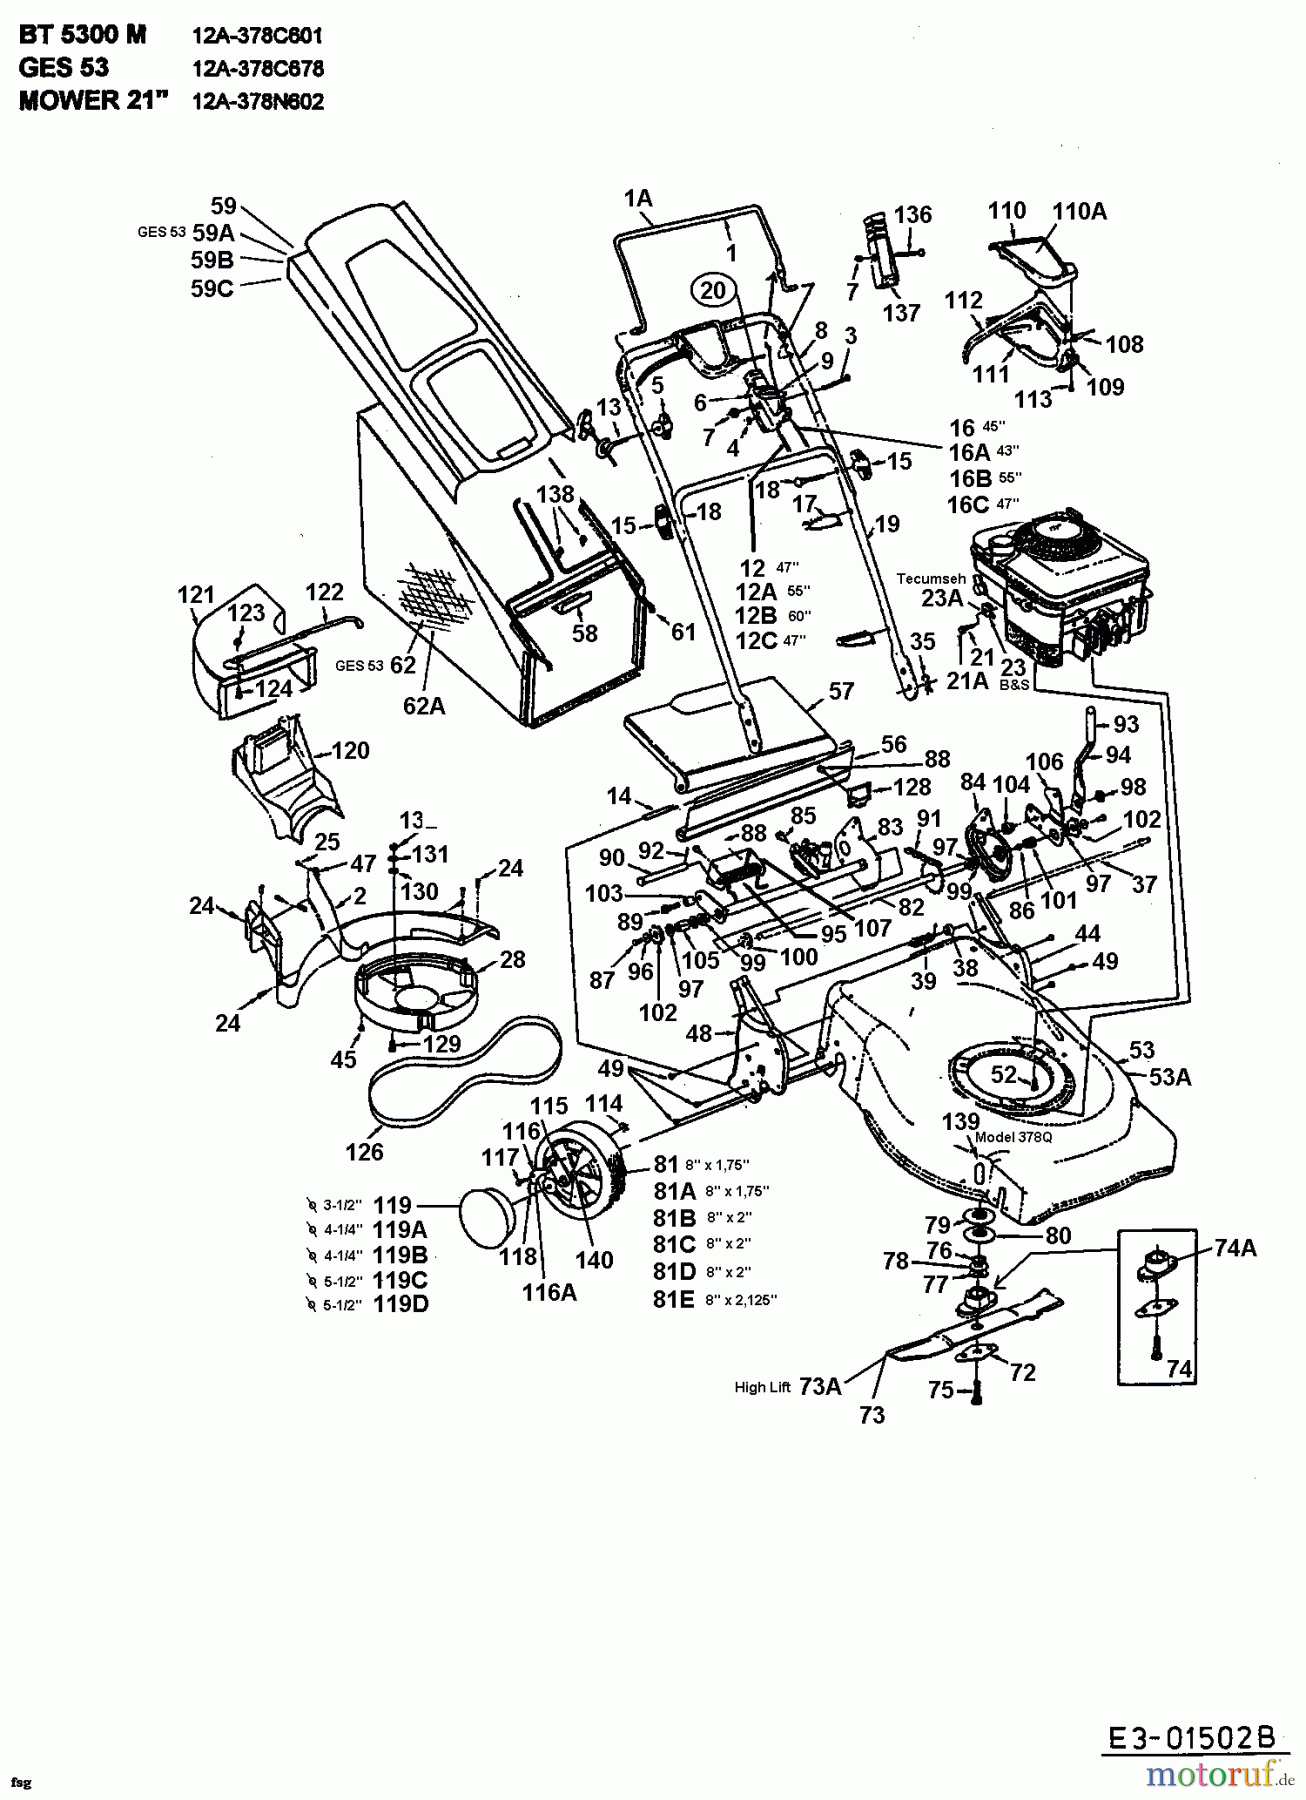  Lawnflite Motormäher mit Antrieb 478 SP 12A-378C611  (1998) Grundgerät